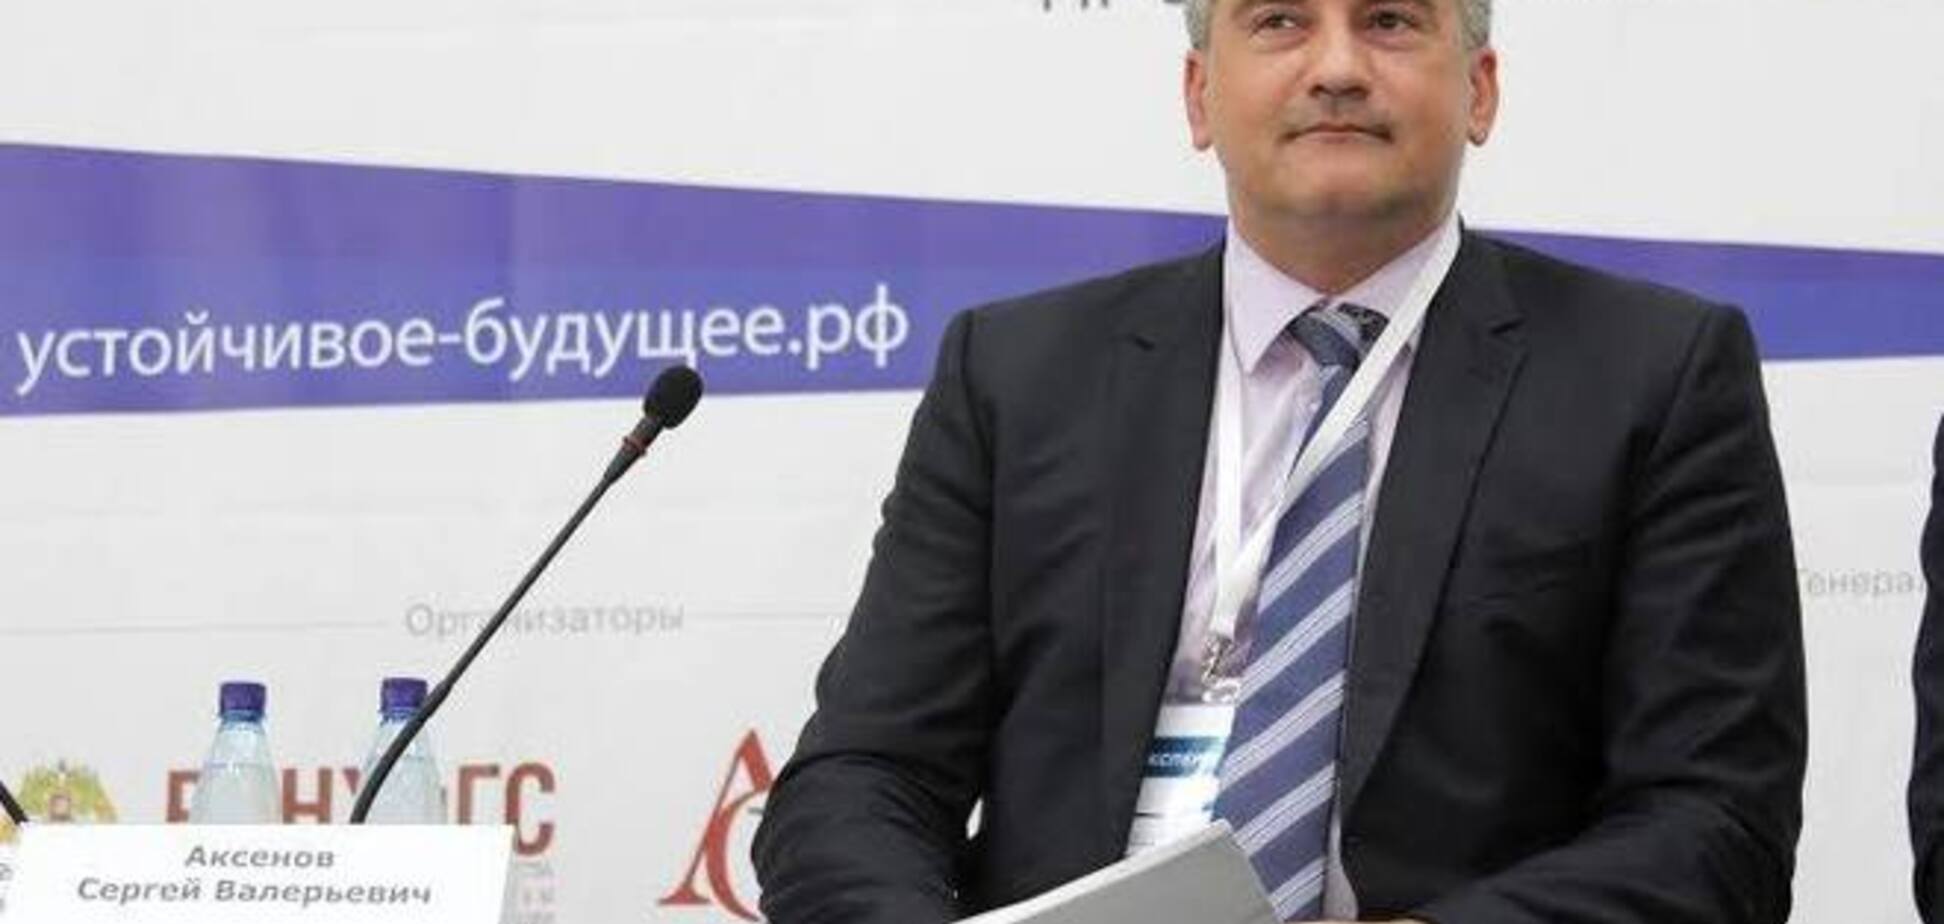 Аксенов возглавил избирательный список партии Путина на выборах в Госсовет Крыма